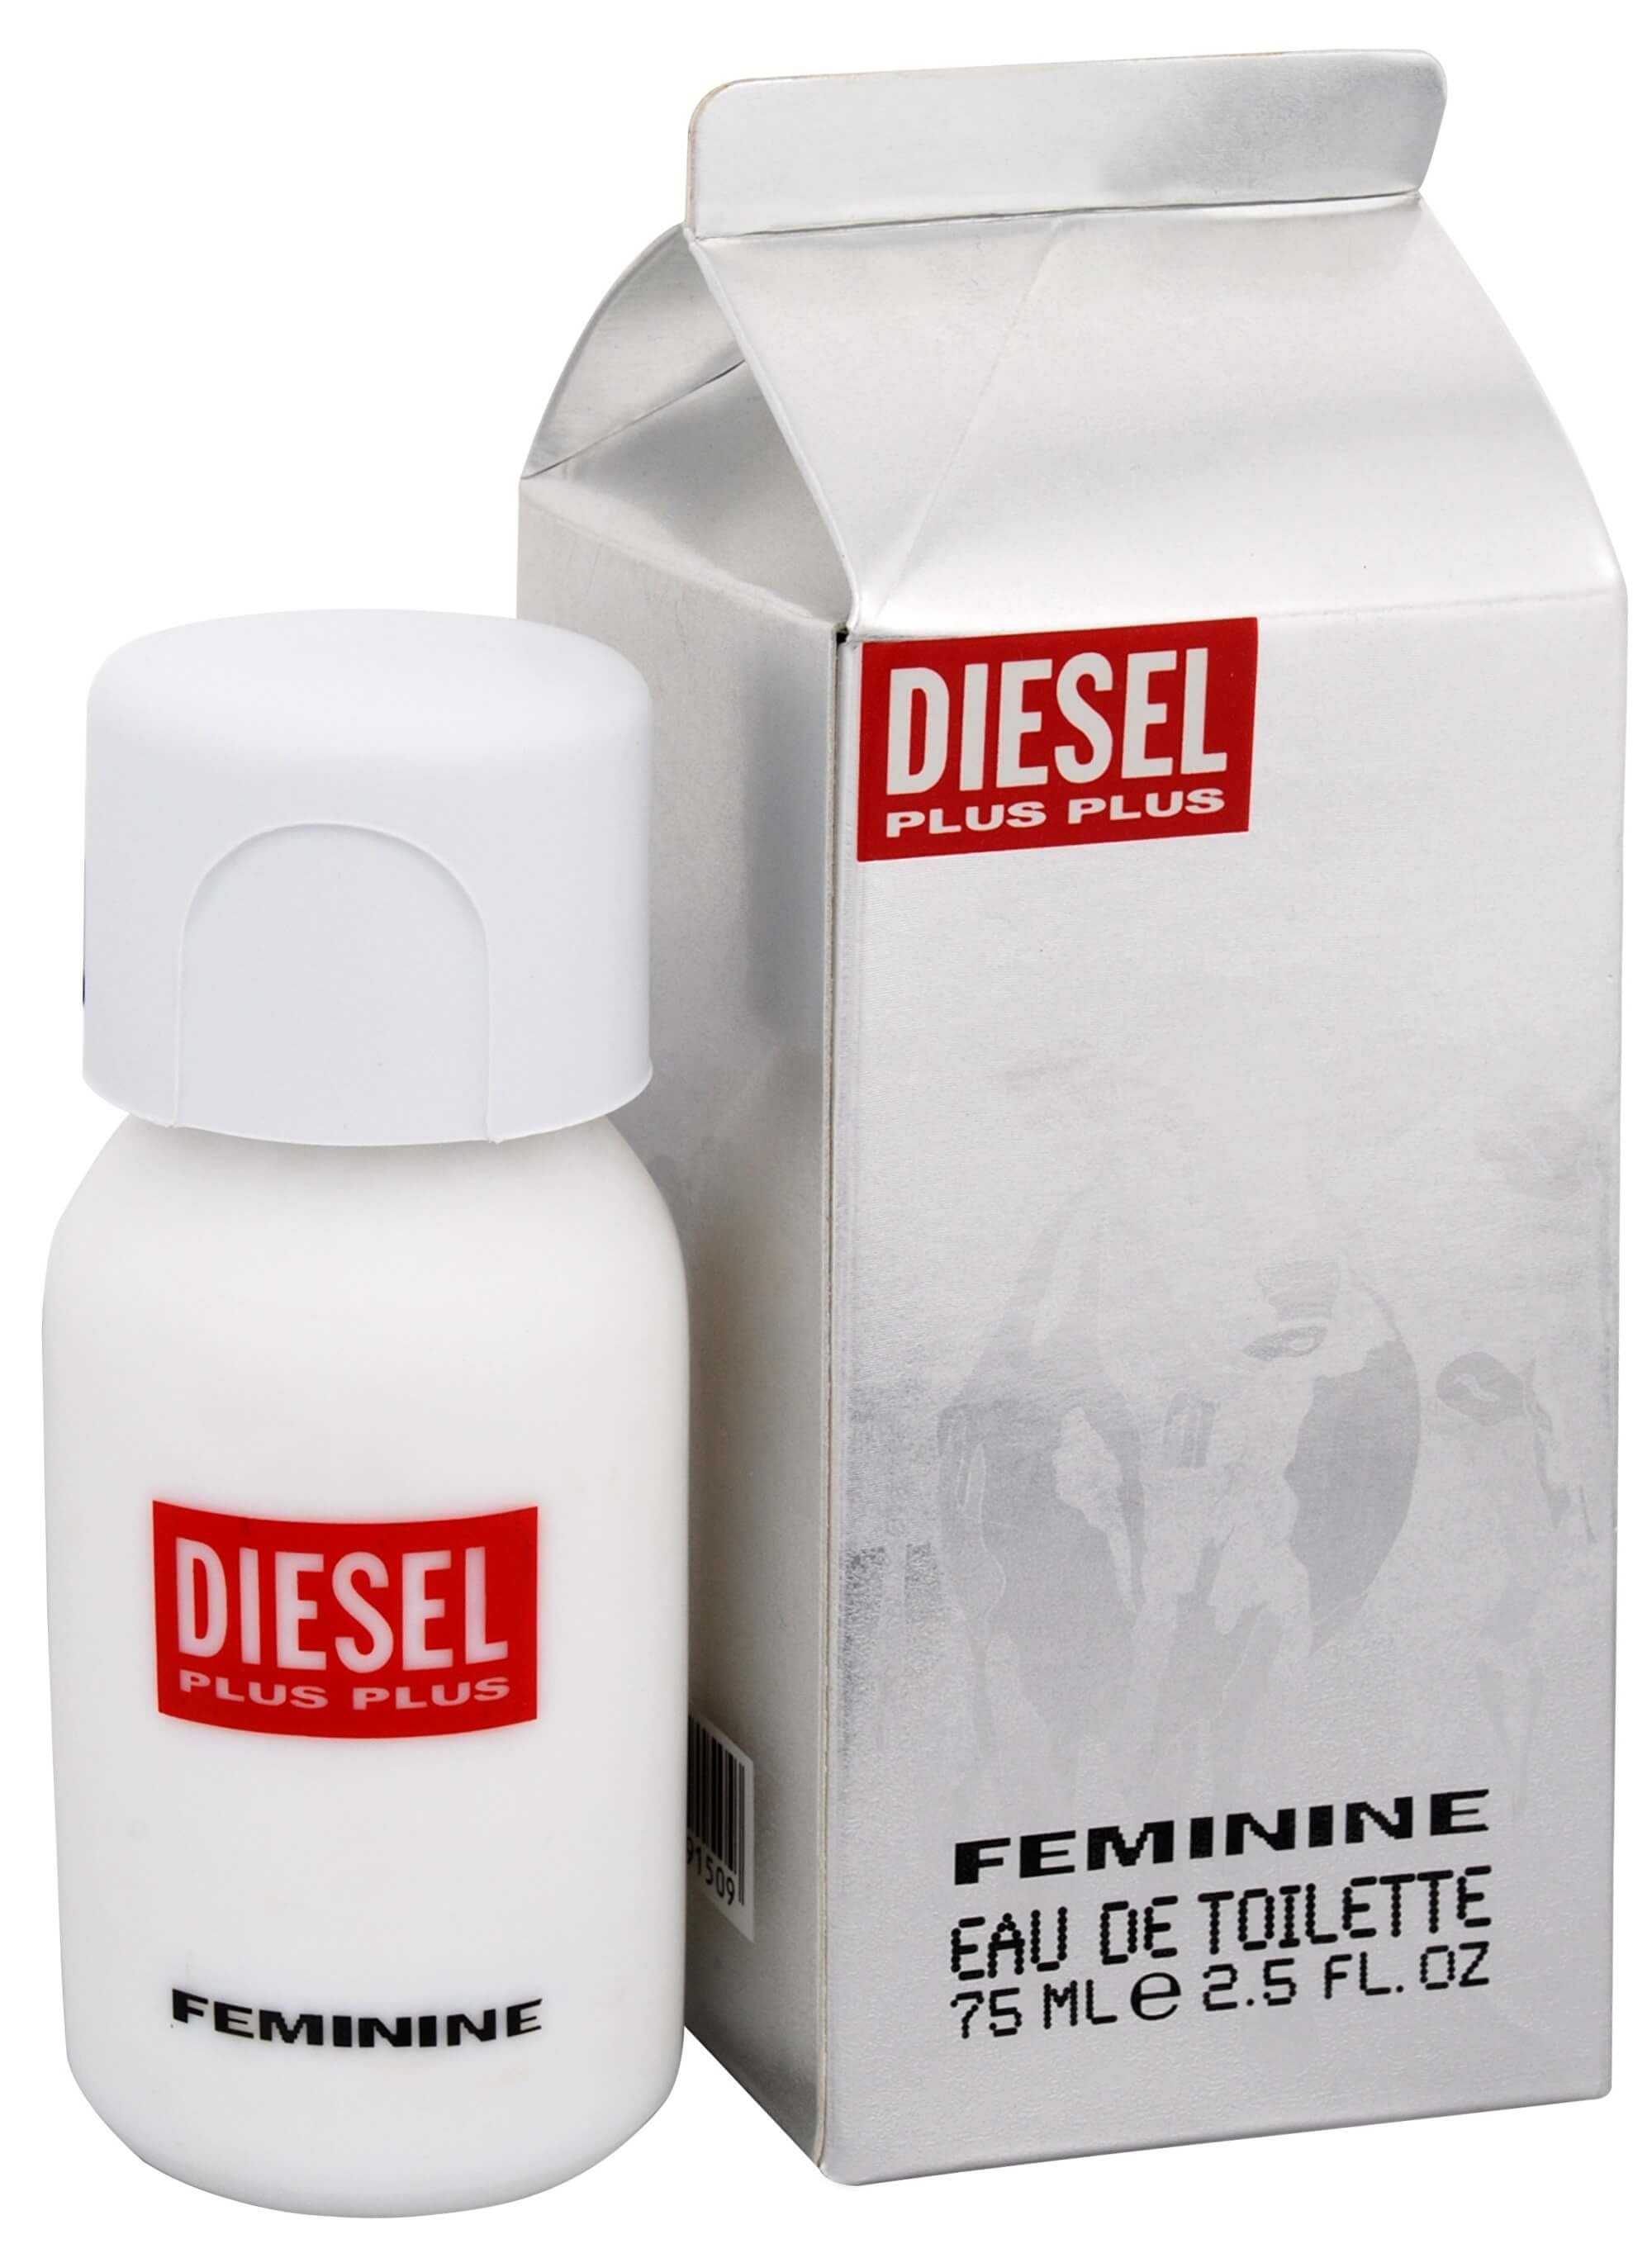 Diesel Plus Plus Feminine - EDT 75 ml